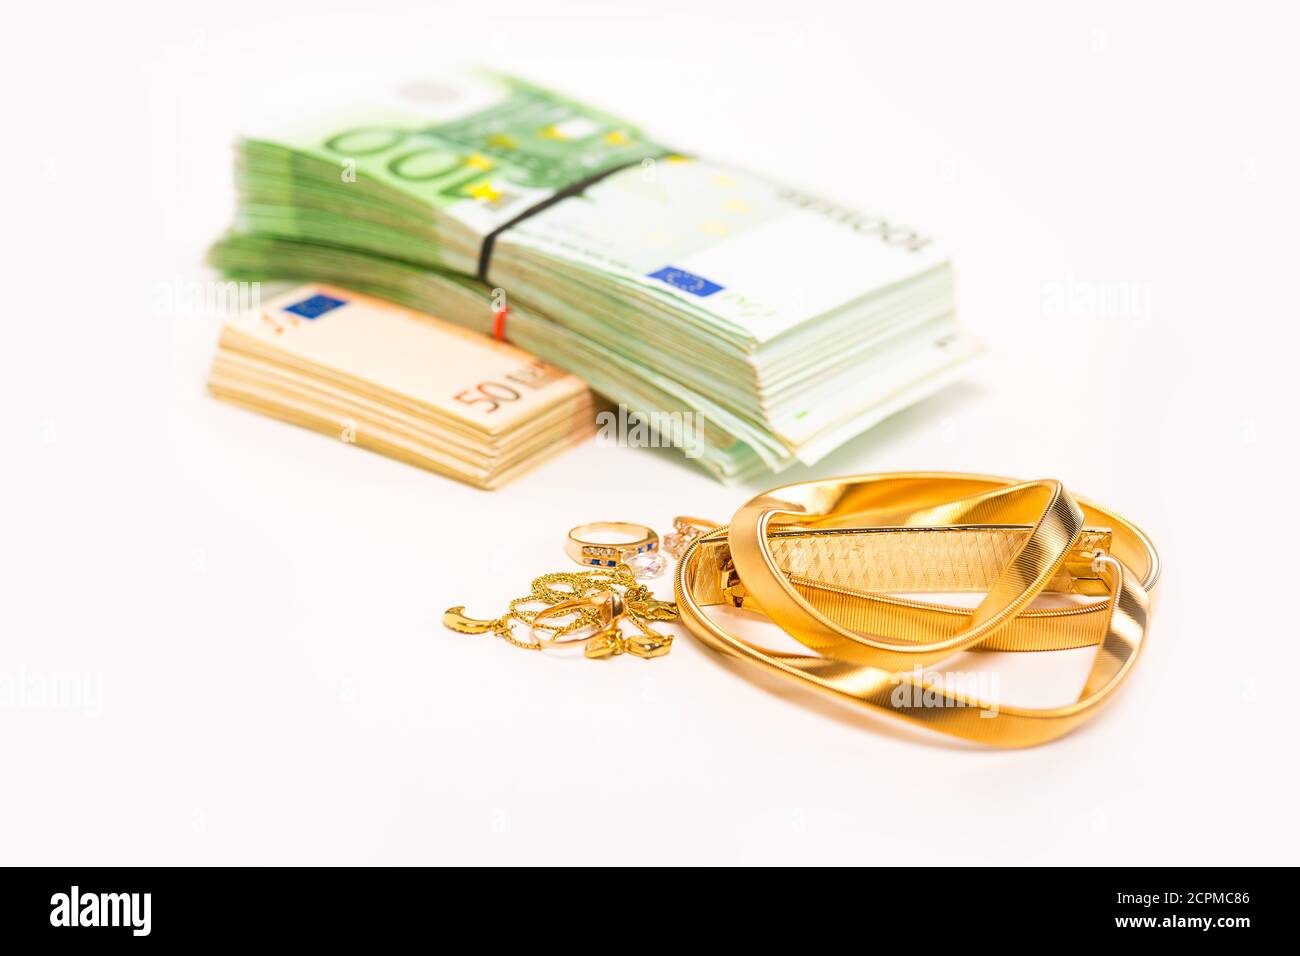 Bargeld für Goldschmuck liegt neben einem Haufen Euro-Banknoten Bargeld isoliert auf weißem Hintergrund. Cash-for-Gold-Geschäftskonzept Stockfoto